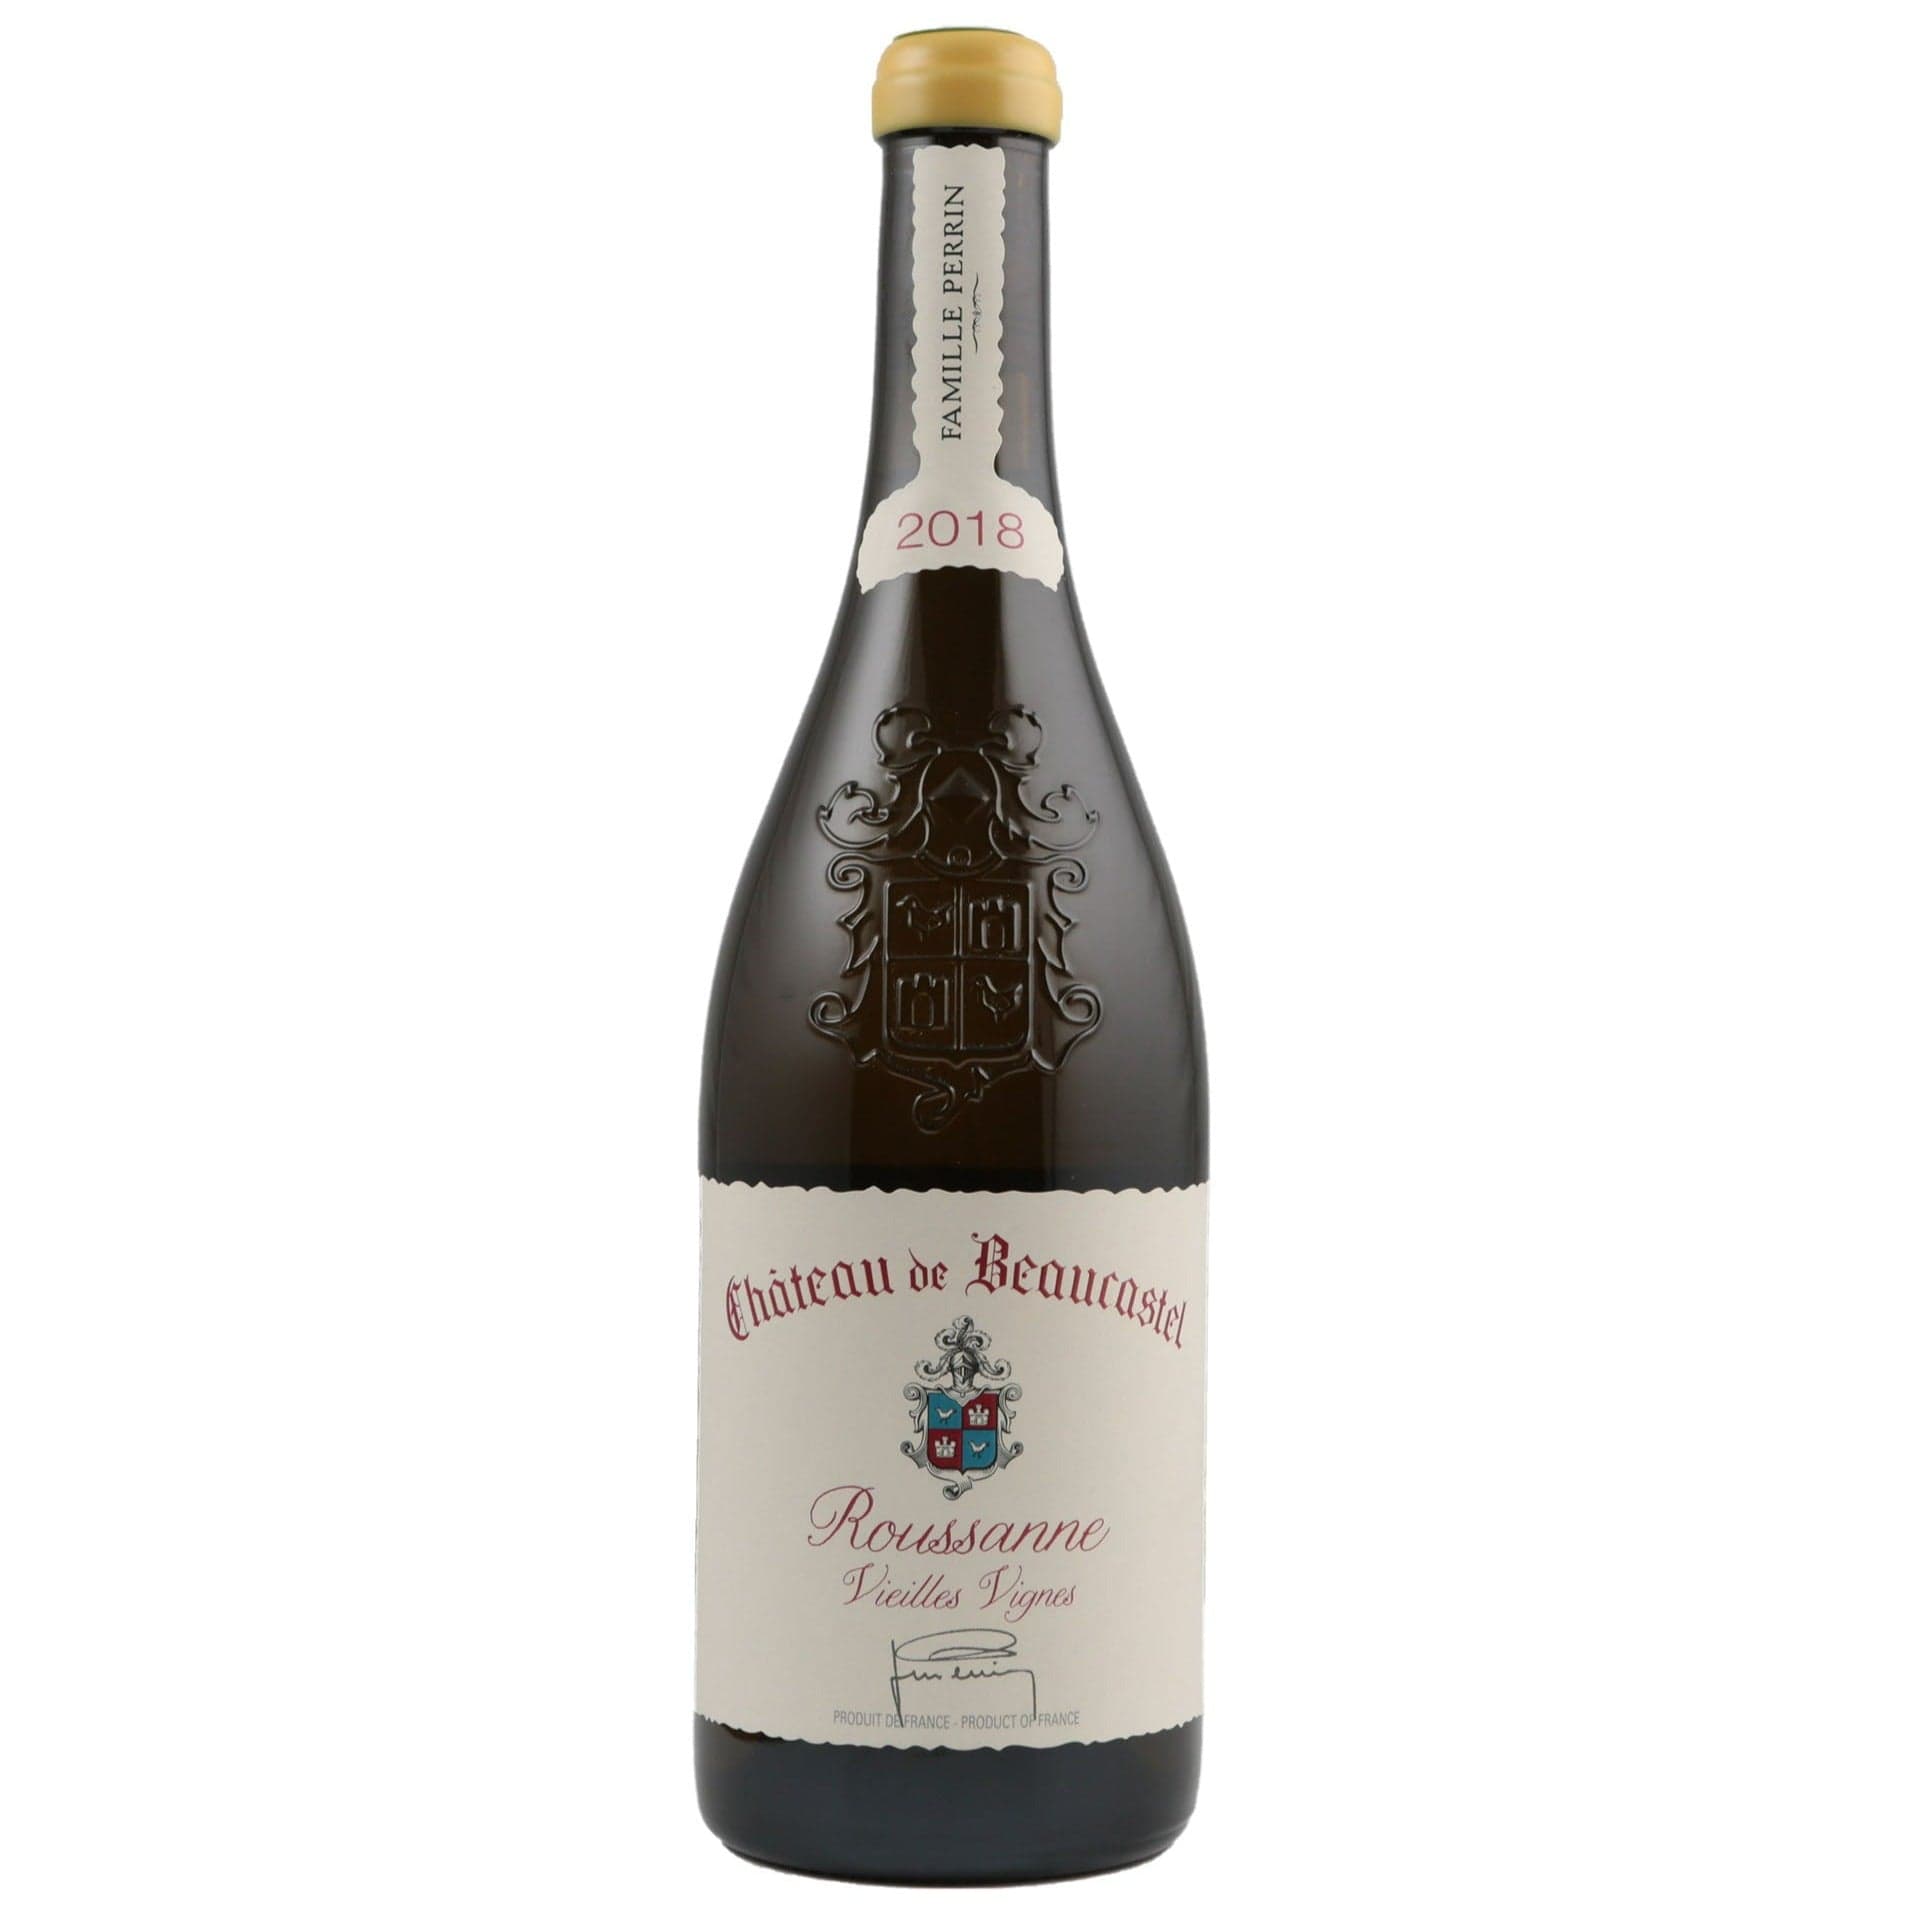 Single bottle of White wine Chateau de Beaucastel, Roussanne Vieilles Vignes, Chateauneuf du Pape Blanc, 2018 100% Roussanne